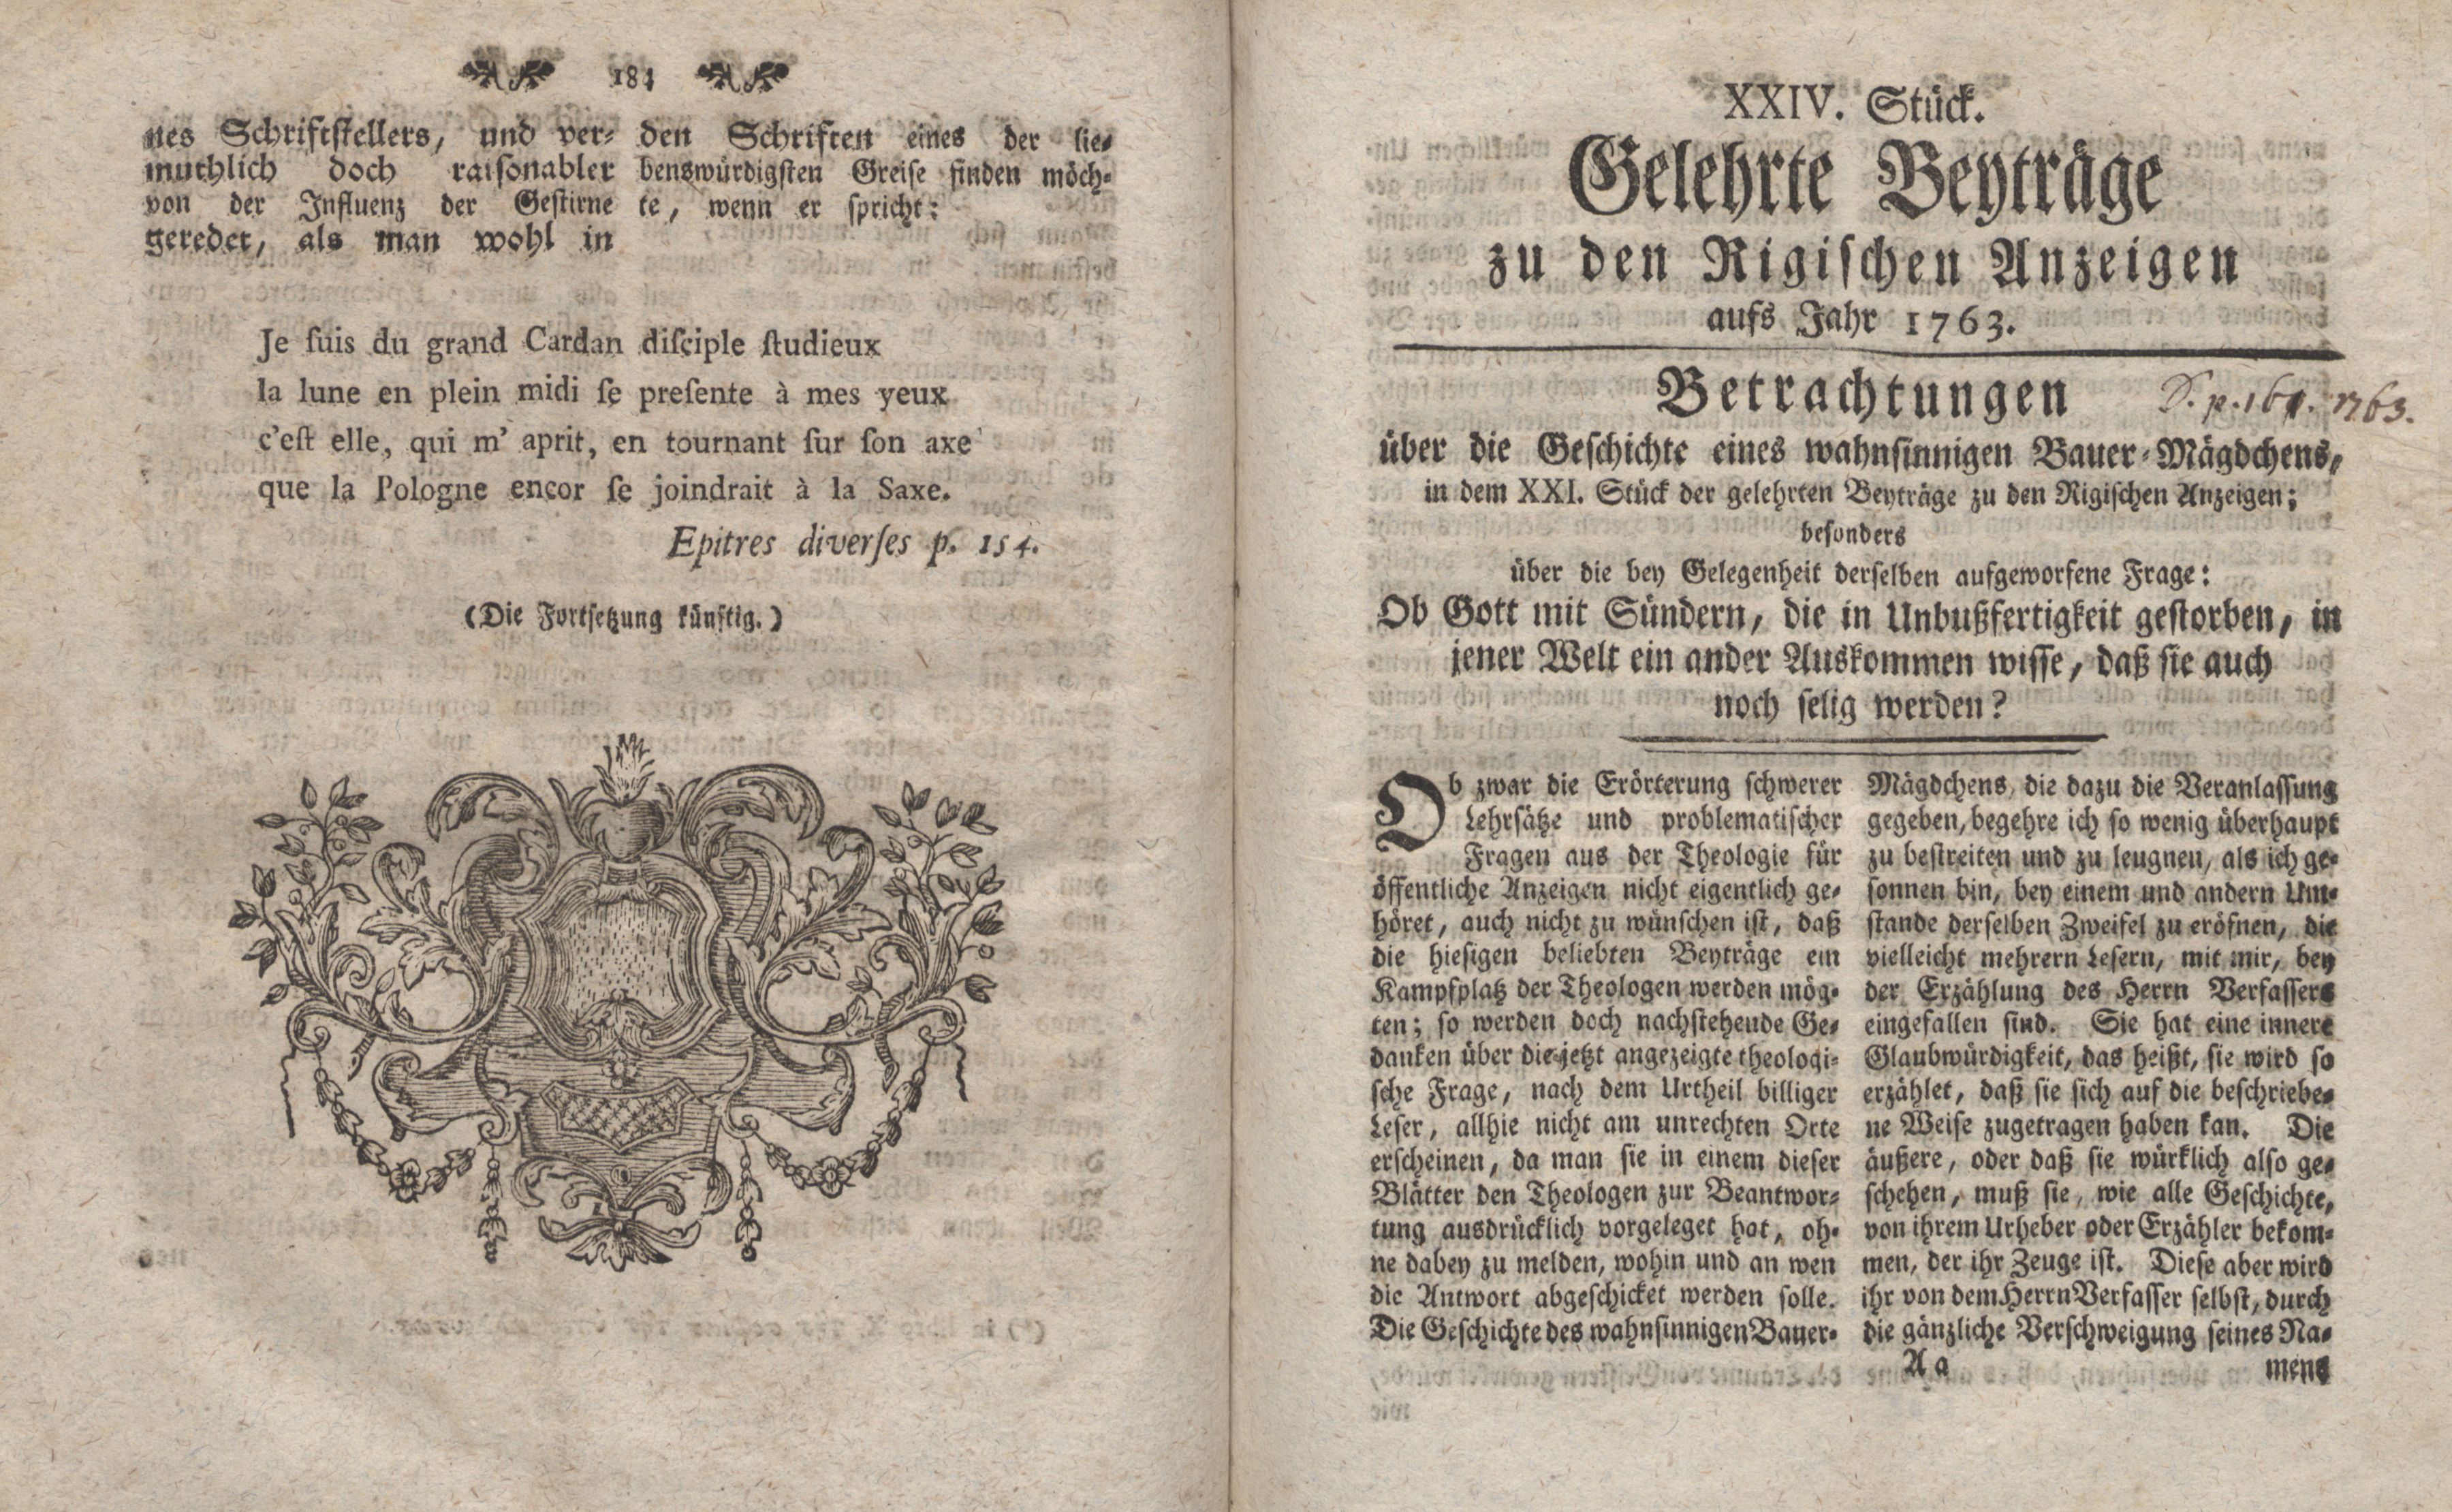 Betrachtungen über die Geschichte eines wahnsinnigen Bauer-Mägdchens (1763) | 1. (184-185) Основной текст